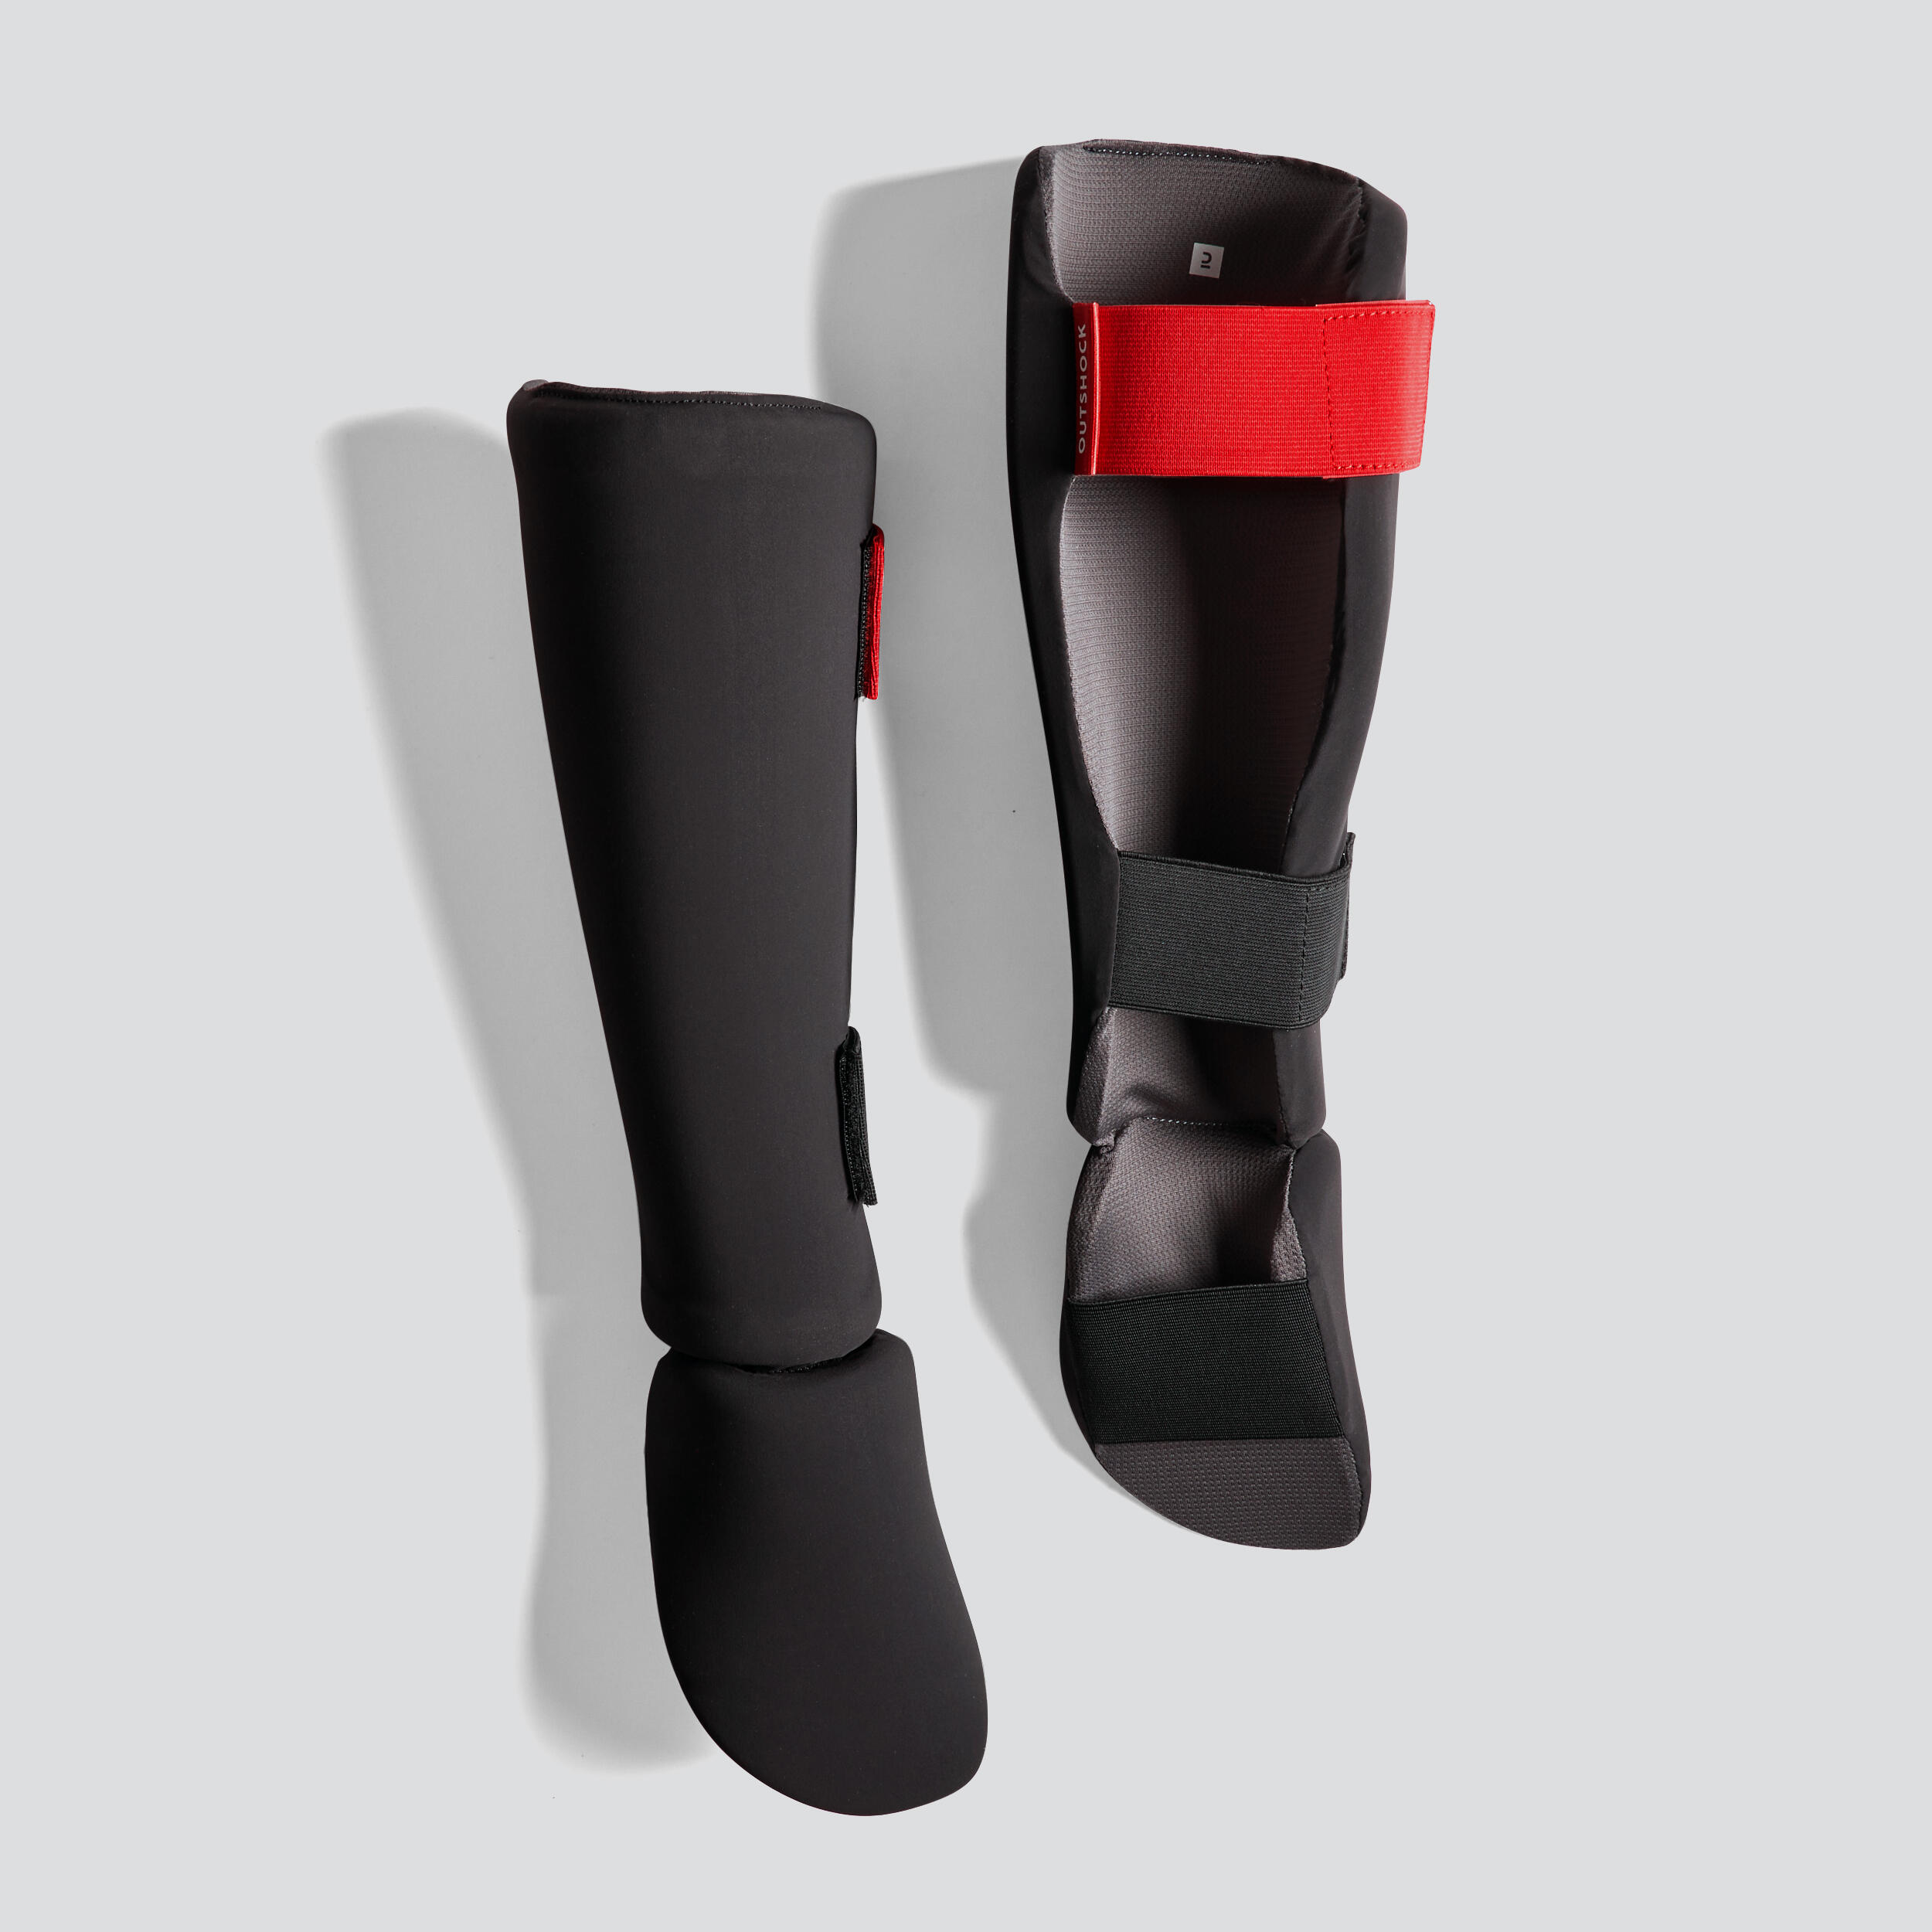 Robust Kickboxing Leg Protector For Optimal Shin Protection